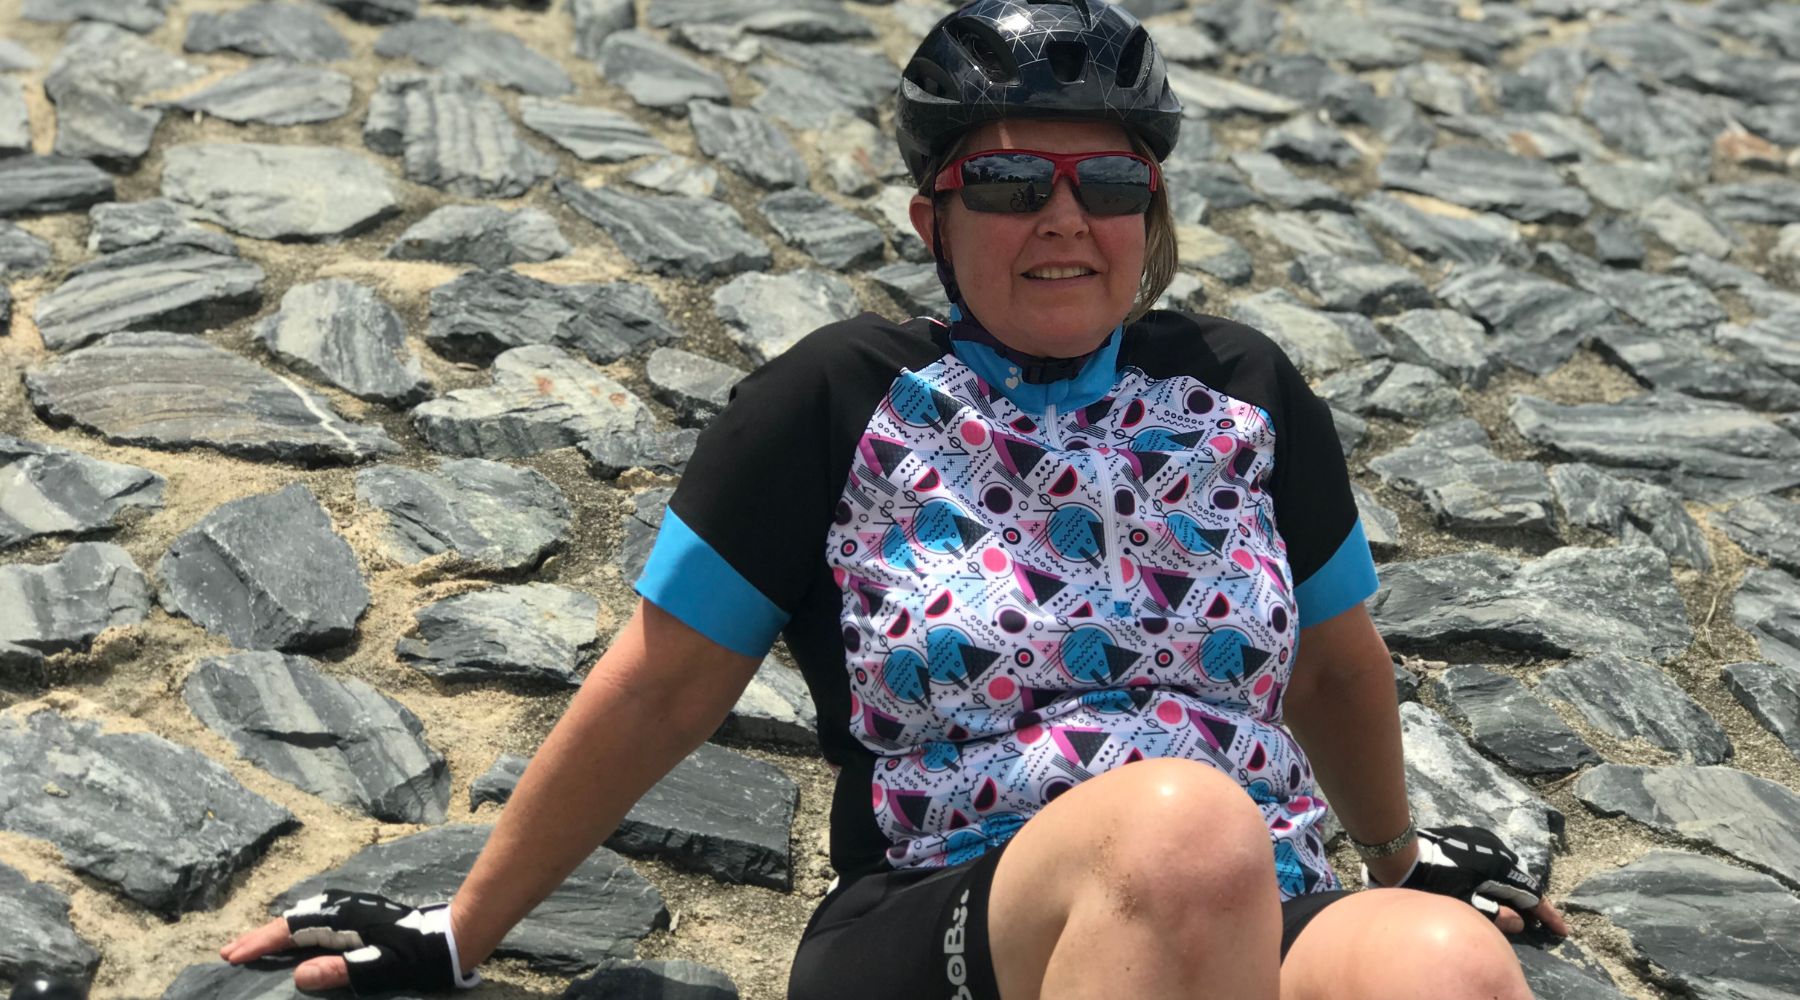 Brisbane mum designs cycling gear for curvy women - Birds on Bikes